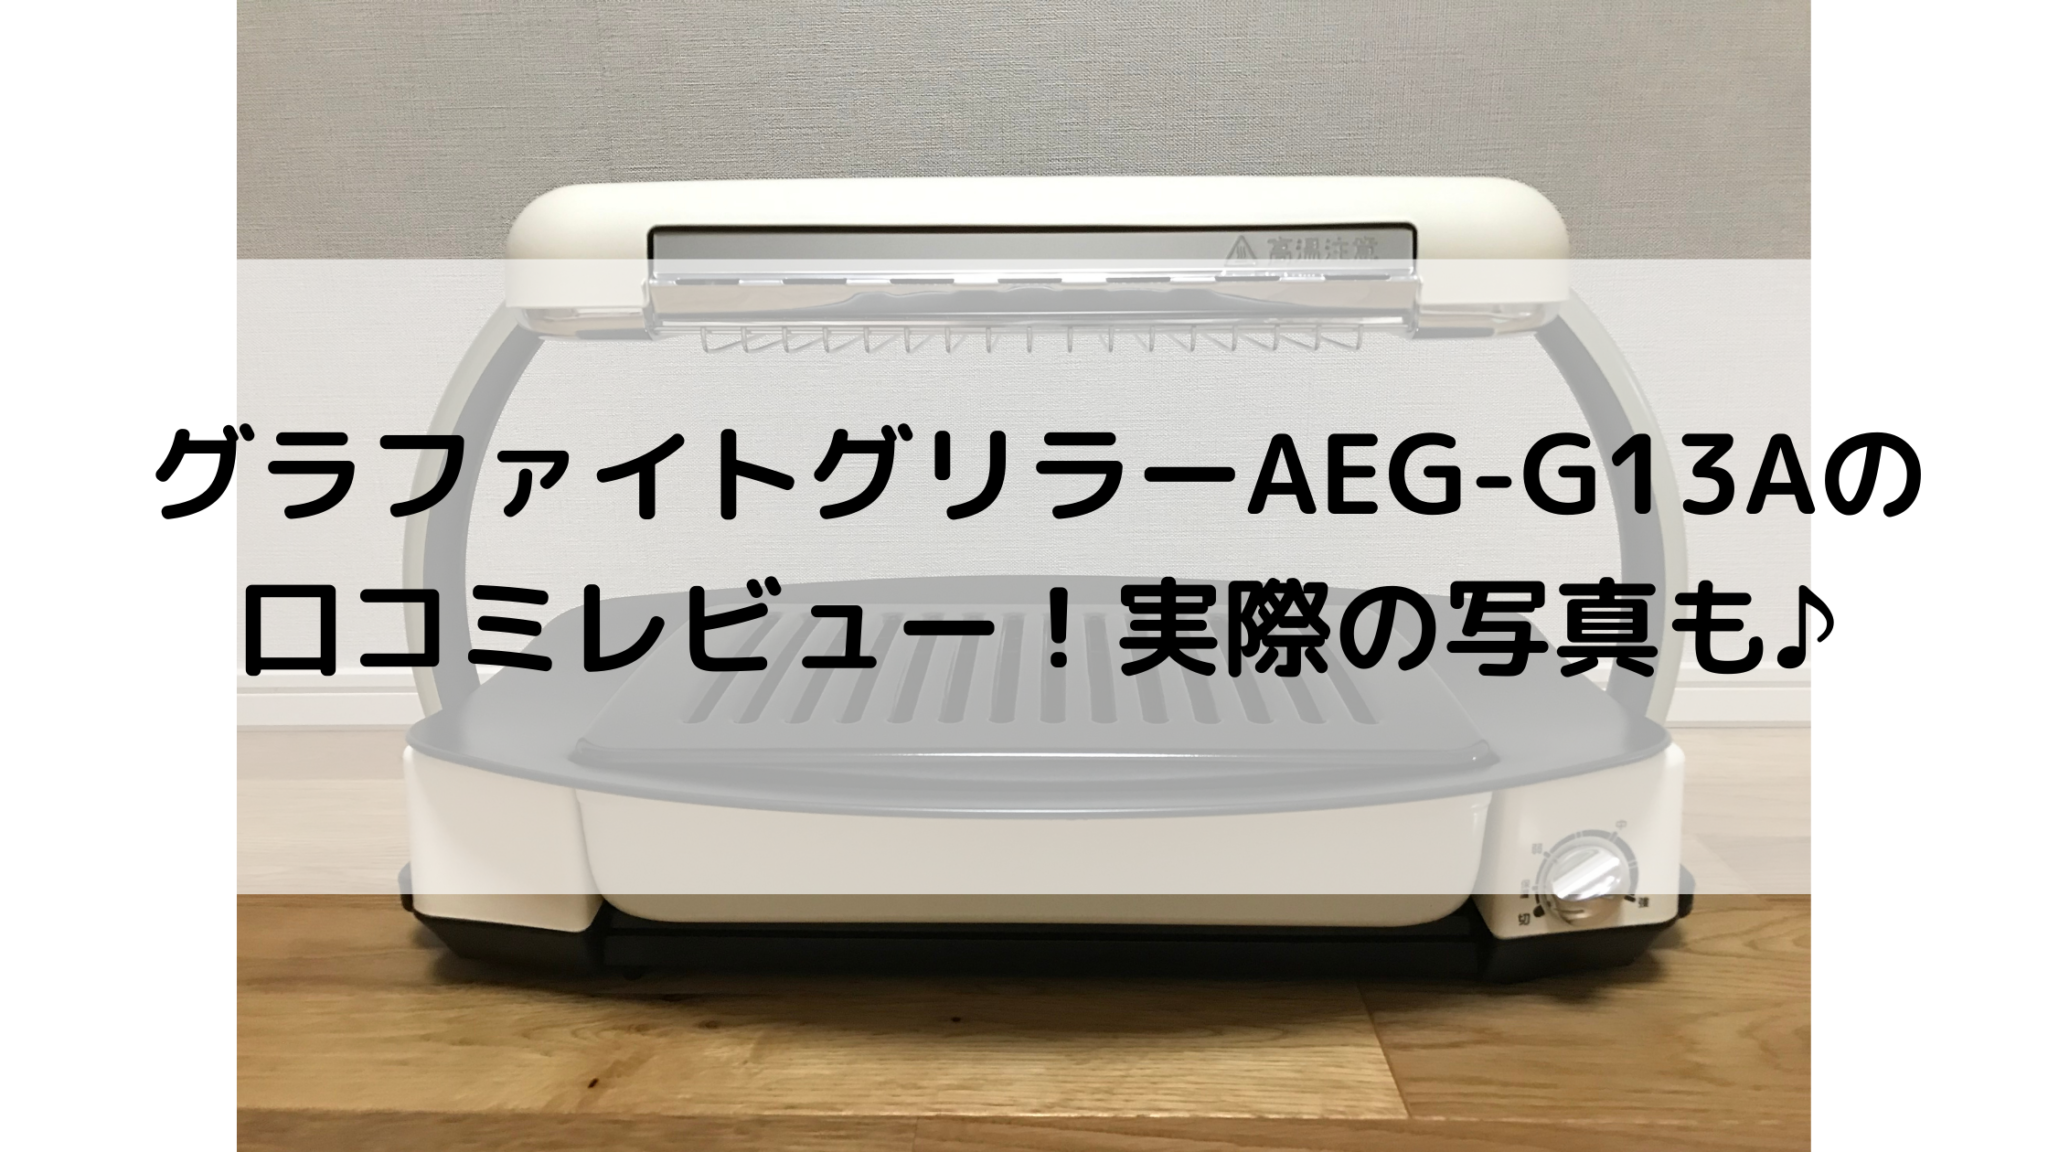 アラジン グラファイトグリラー AEG-G13A(W) 新品未使用 遠赤 減煙 